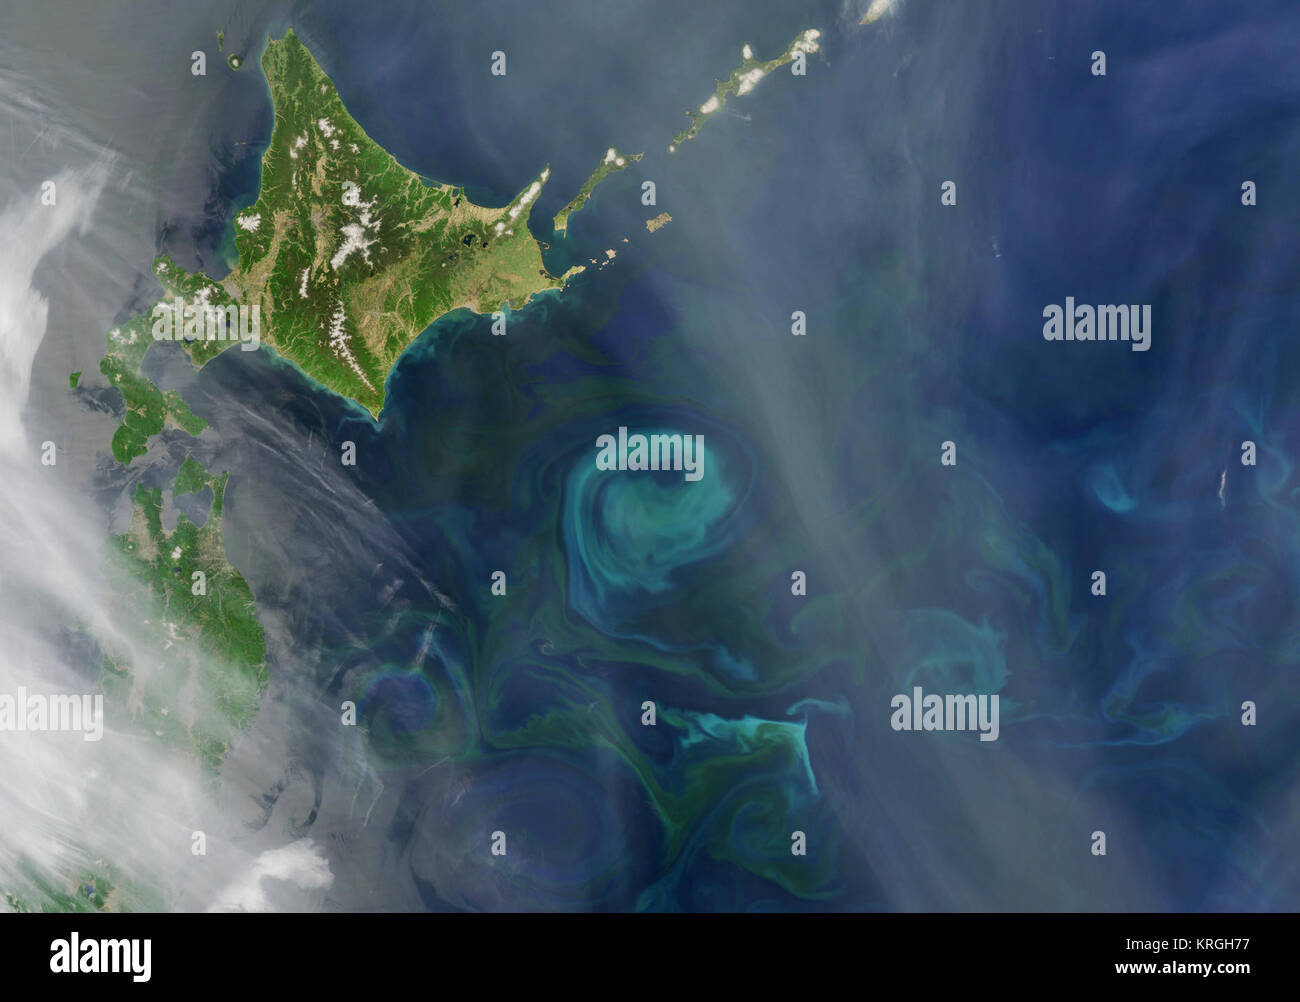 La primavera florecen los colores el Pacífico cerca de Hokkaido -- En el noroeste del océano Pacífico, la corriente de Oyashio fluye hacia abajo fuera del Ártico, más allá de Siberia y la Península de Kamchatka. En torno a la latitud de Hokkaido, Japón, comienza a virar hacia el este y confluye con el calentador, la corriente de Kuroshio fluye hacia el área del sur. Esta imagen desde el Moderate Resolution Imaging Spectroradiometer (MODIS) a bordo del satélite Aqua de NASA del 21 de mayo de 2009, ilustra cómo la convergencia de estas dos corrientes afecta el fitoplancton (plantas microscópicas-como criaturas que forman la base de la red alimentaria marina) Foto de stock